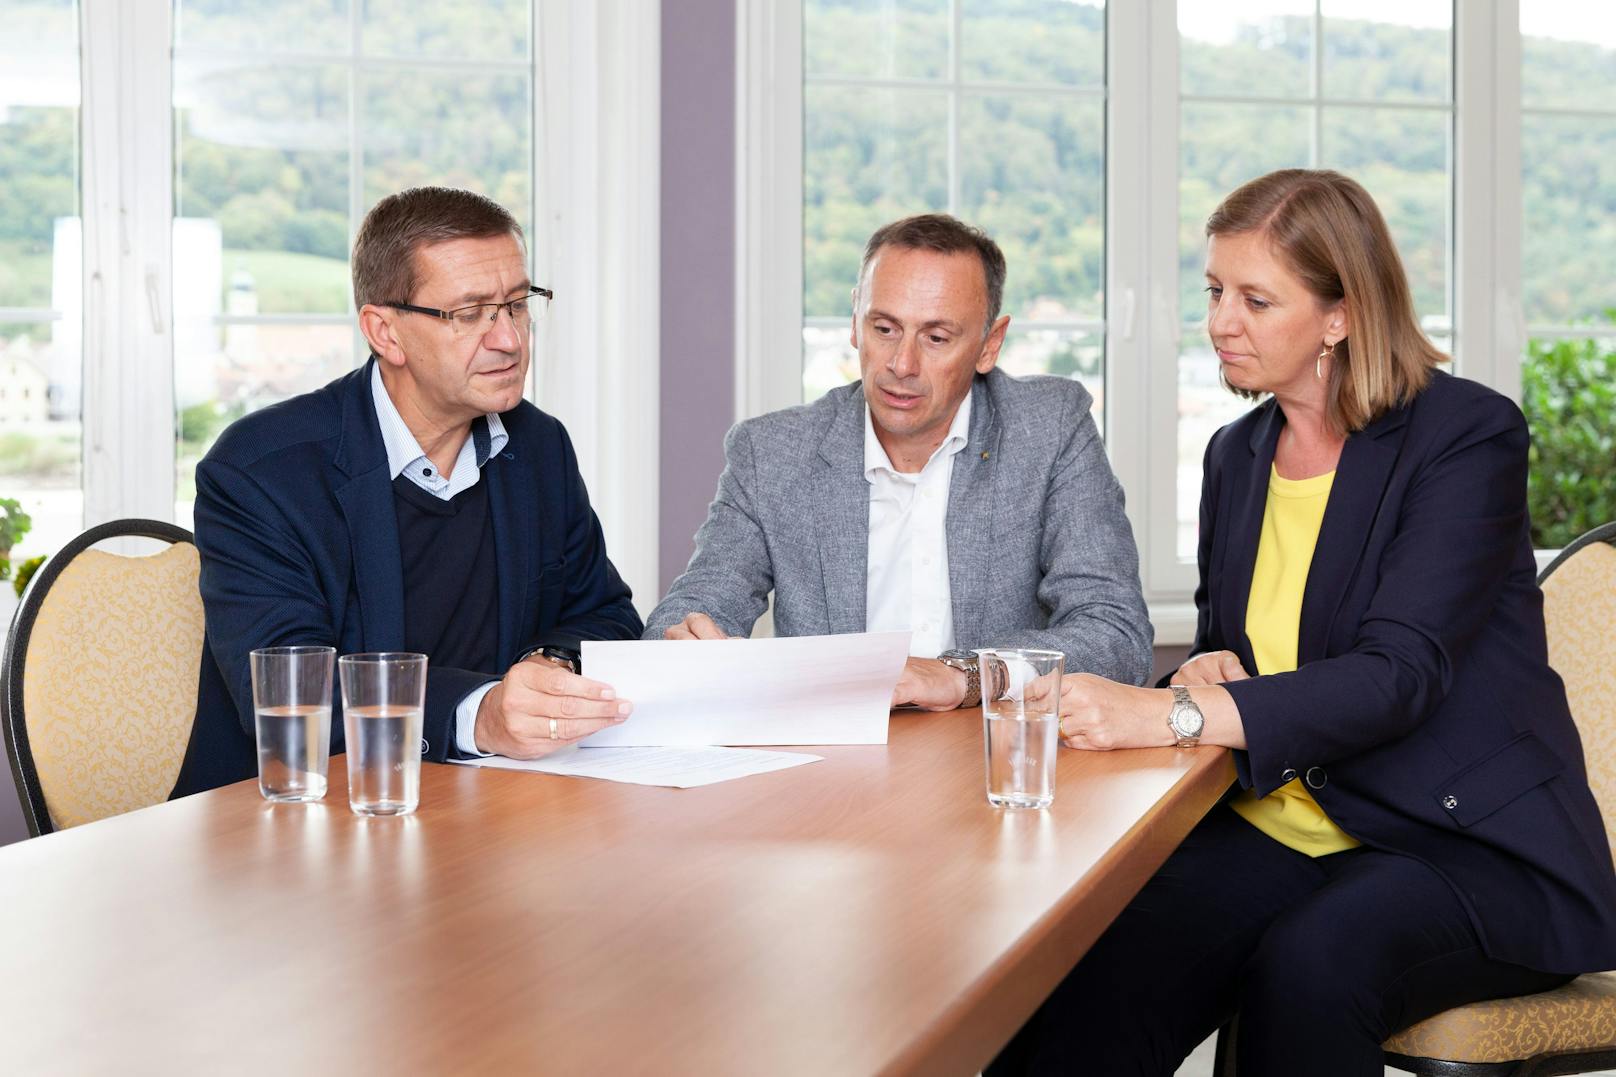 Landesrat Markus Achleitner (OÖ), Landesrat Jochen Danninger (NÖ) und Barbara Eibinger-Miedl (Steiermark)